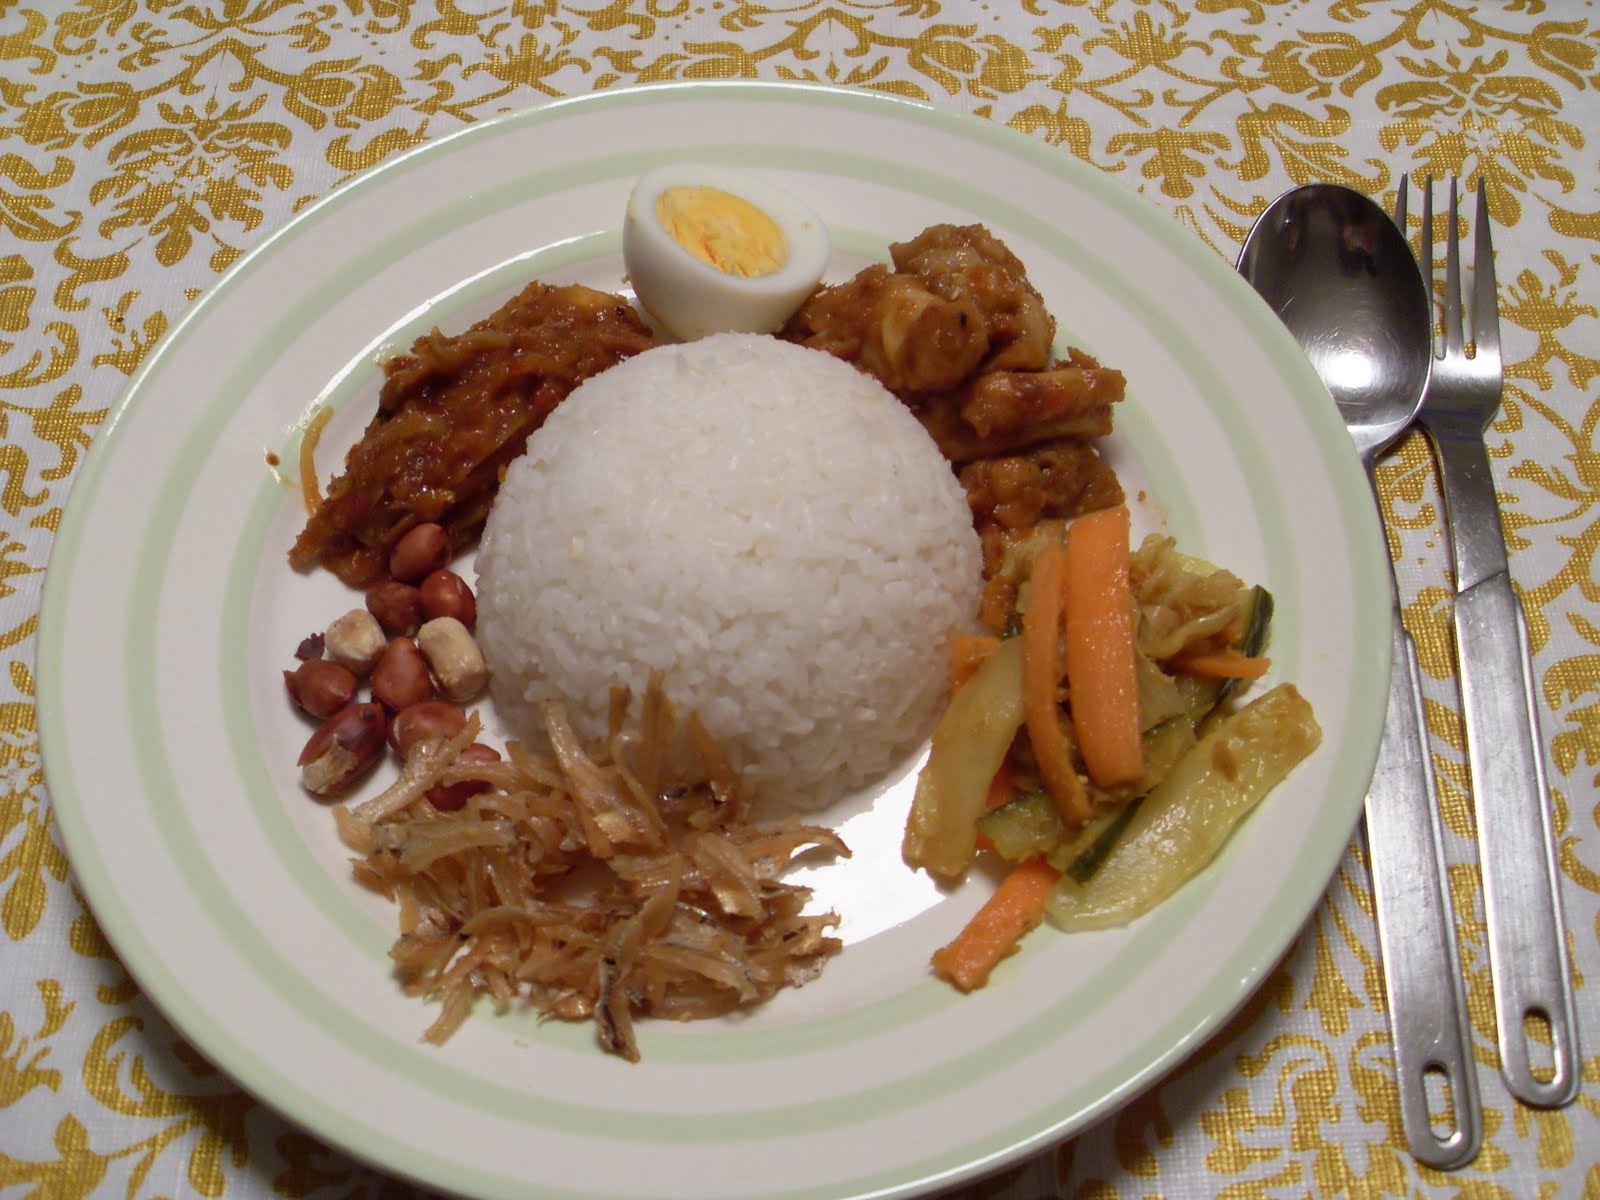 妈妈的爱心椰浆饭 | 椰浆饭是大马马来人的特色美食，不过也深受华人和印度人的喜爱。妈妈自己弄的椰浆饭更是深得我心。椰浆饭… | Flickr